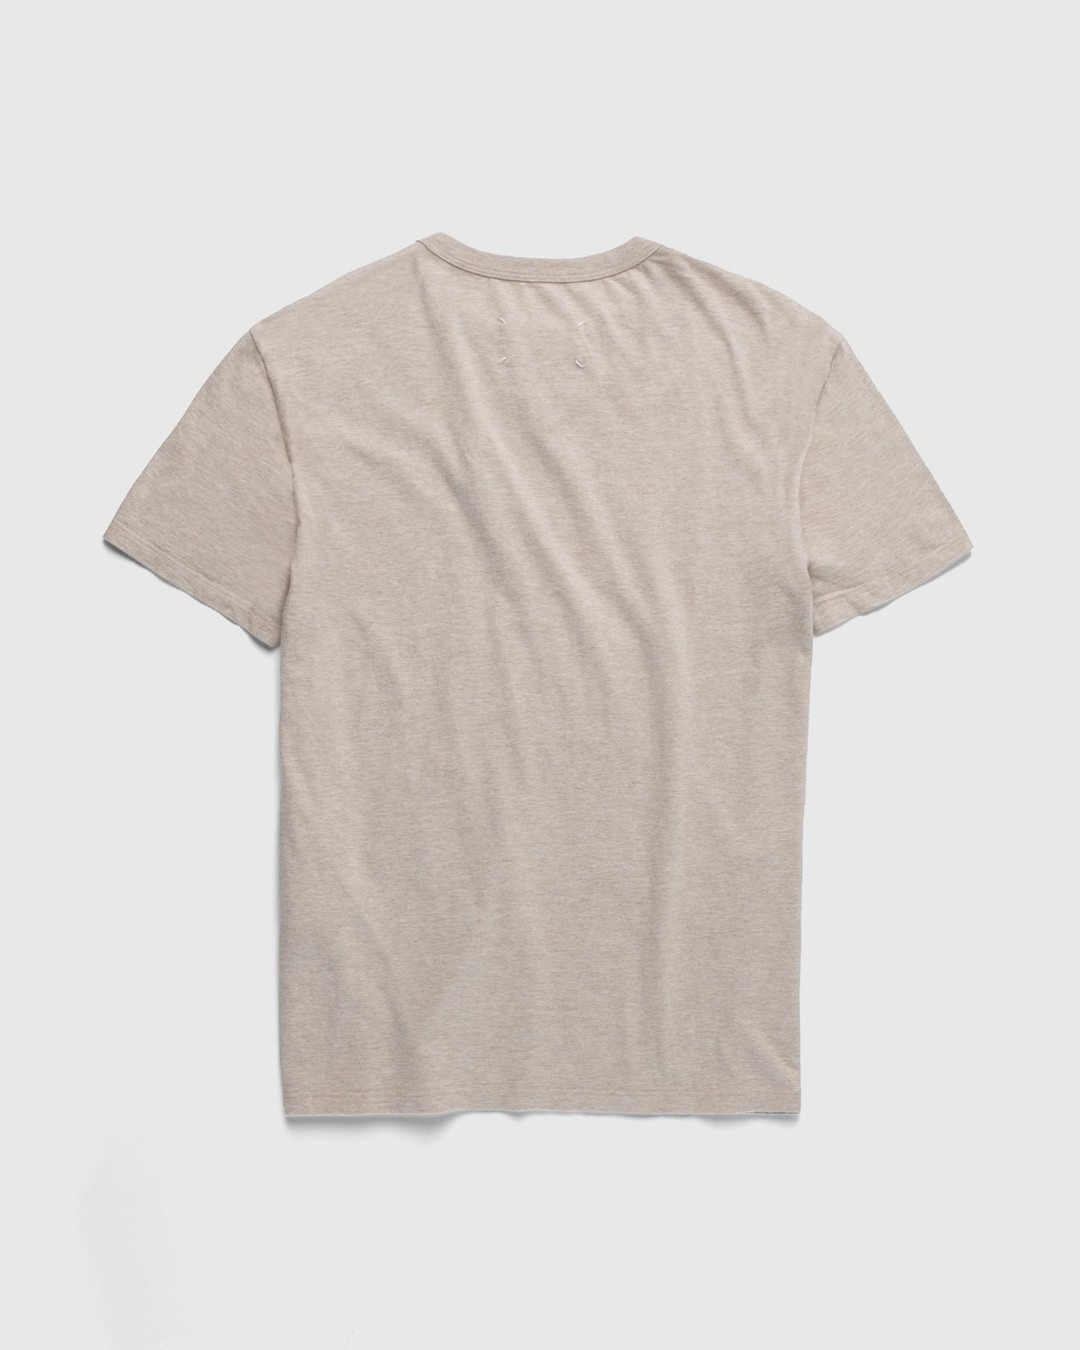 Maison Margiela – Logo T-Shirt Beige - T-shirts - Beige - Image 2